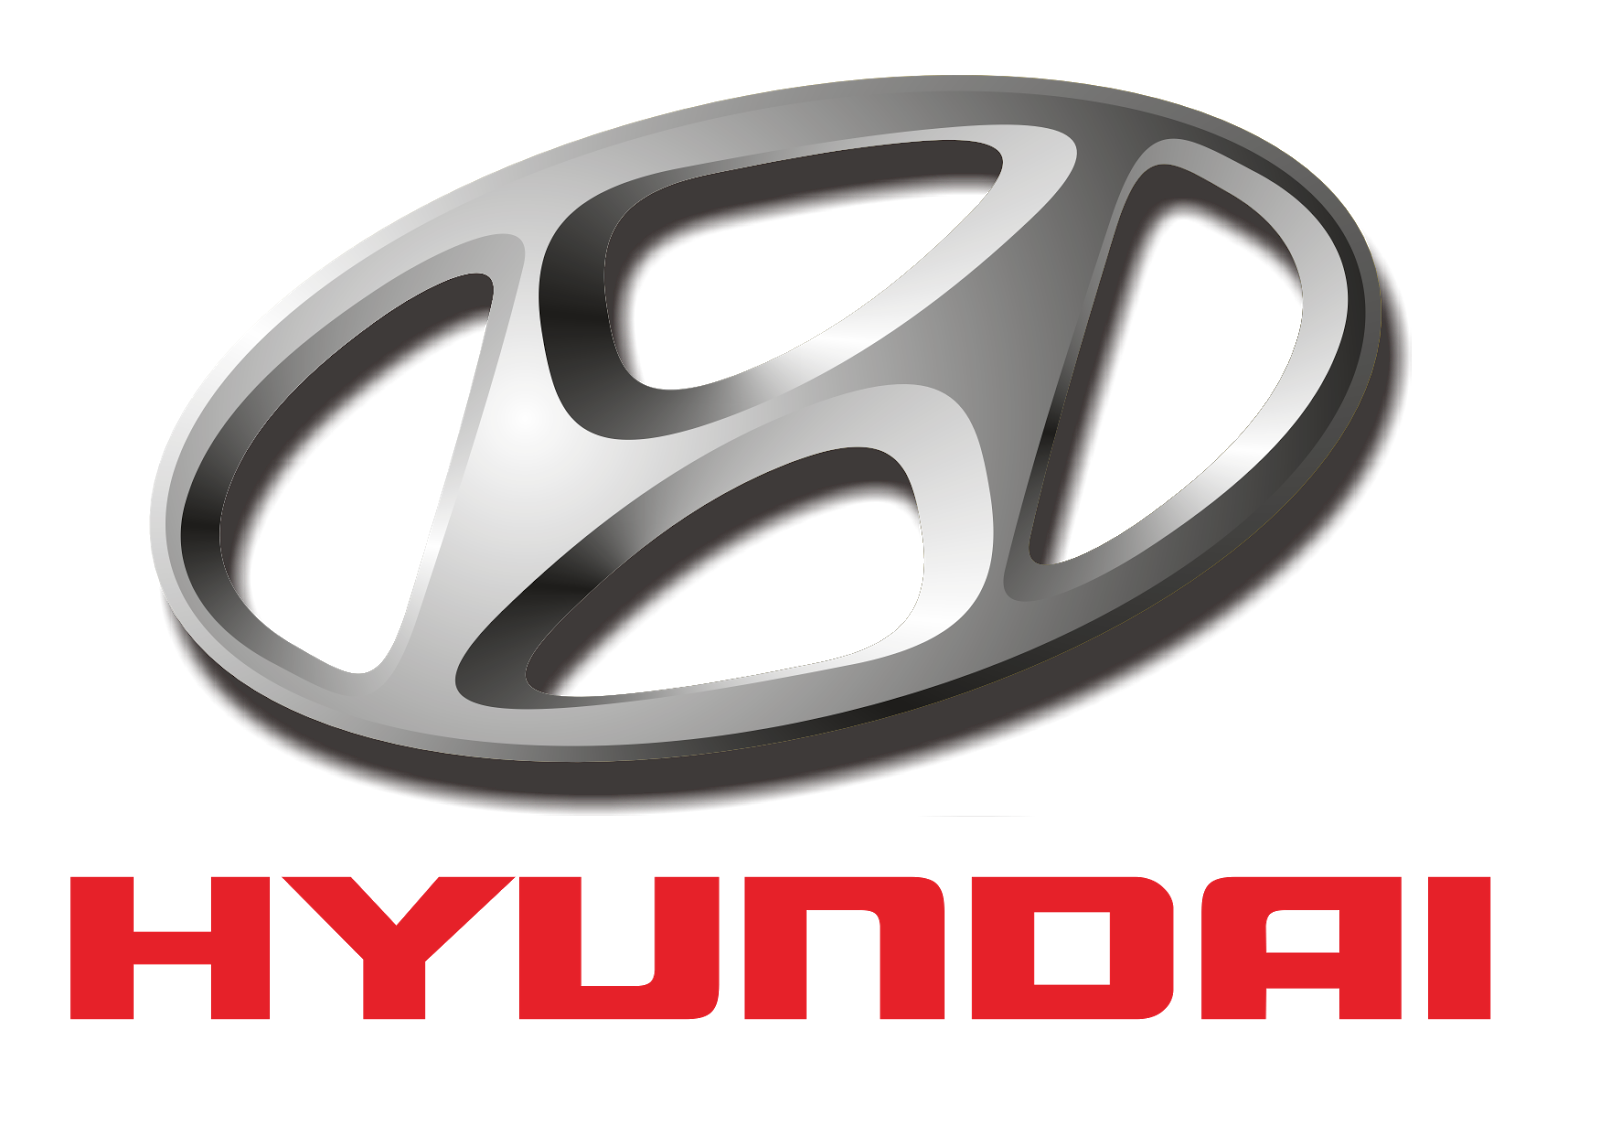 Hyundai Logo Vector - Hyundai Vector, Transparent background PNG HD thumbnail